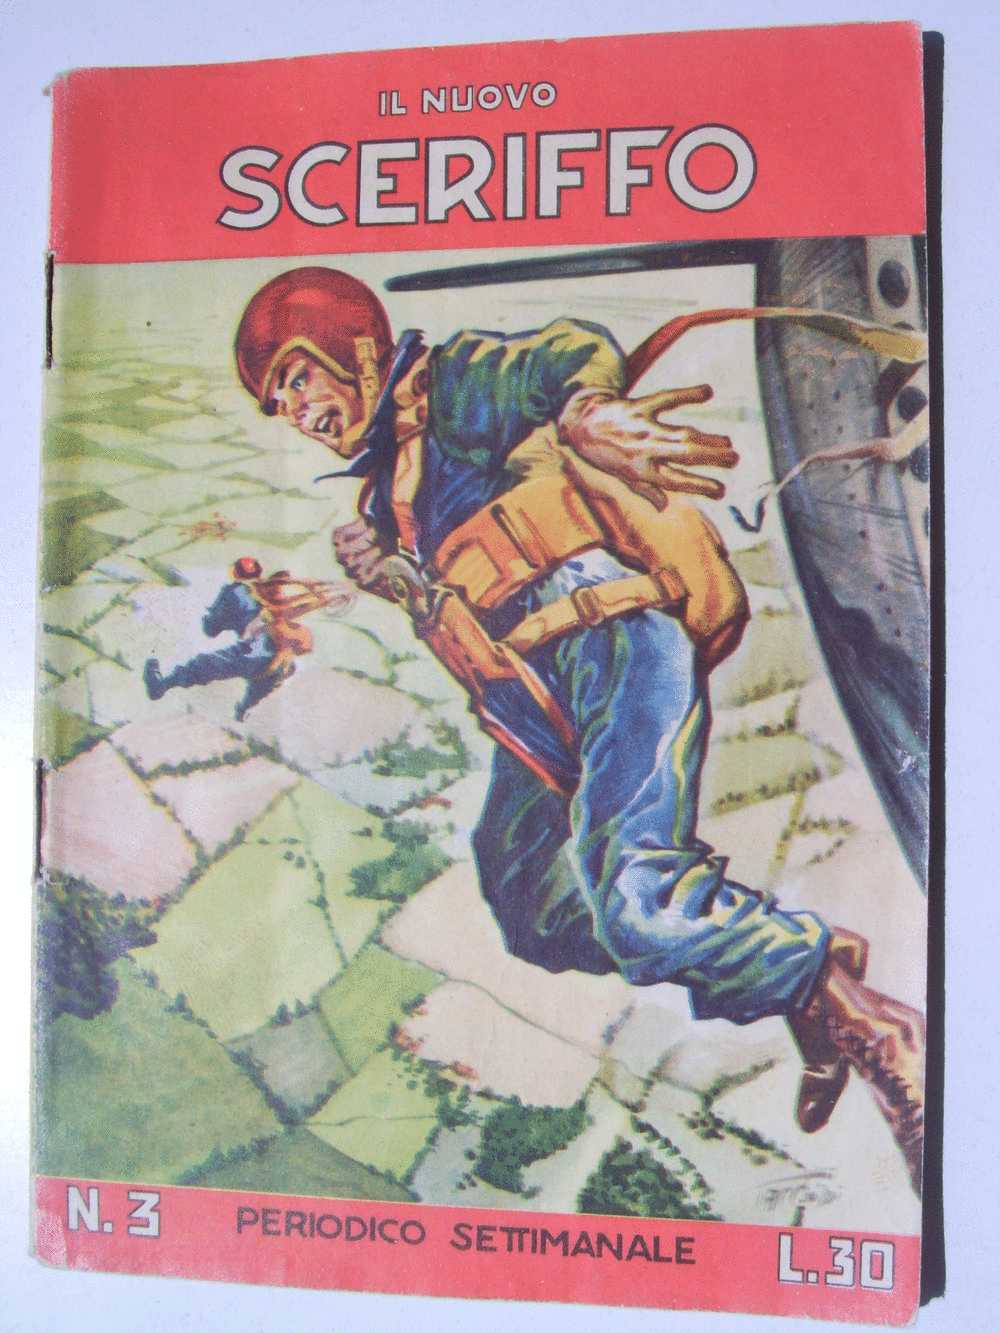 TORELLI - IL NUOVO SCERIFFO N. 3 -  Copertina Di TACCONI - 1957 - OTTIMO - ORIGINALE - Classici 1930/50